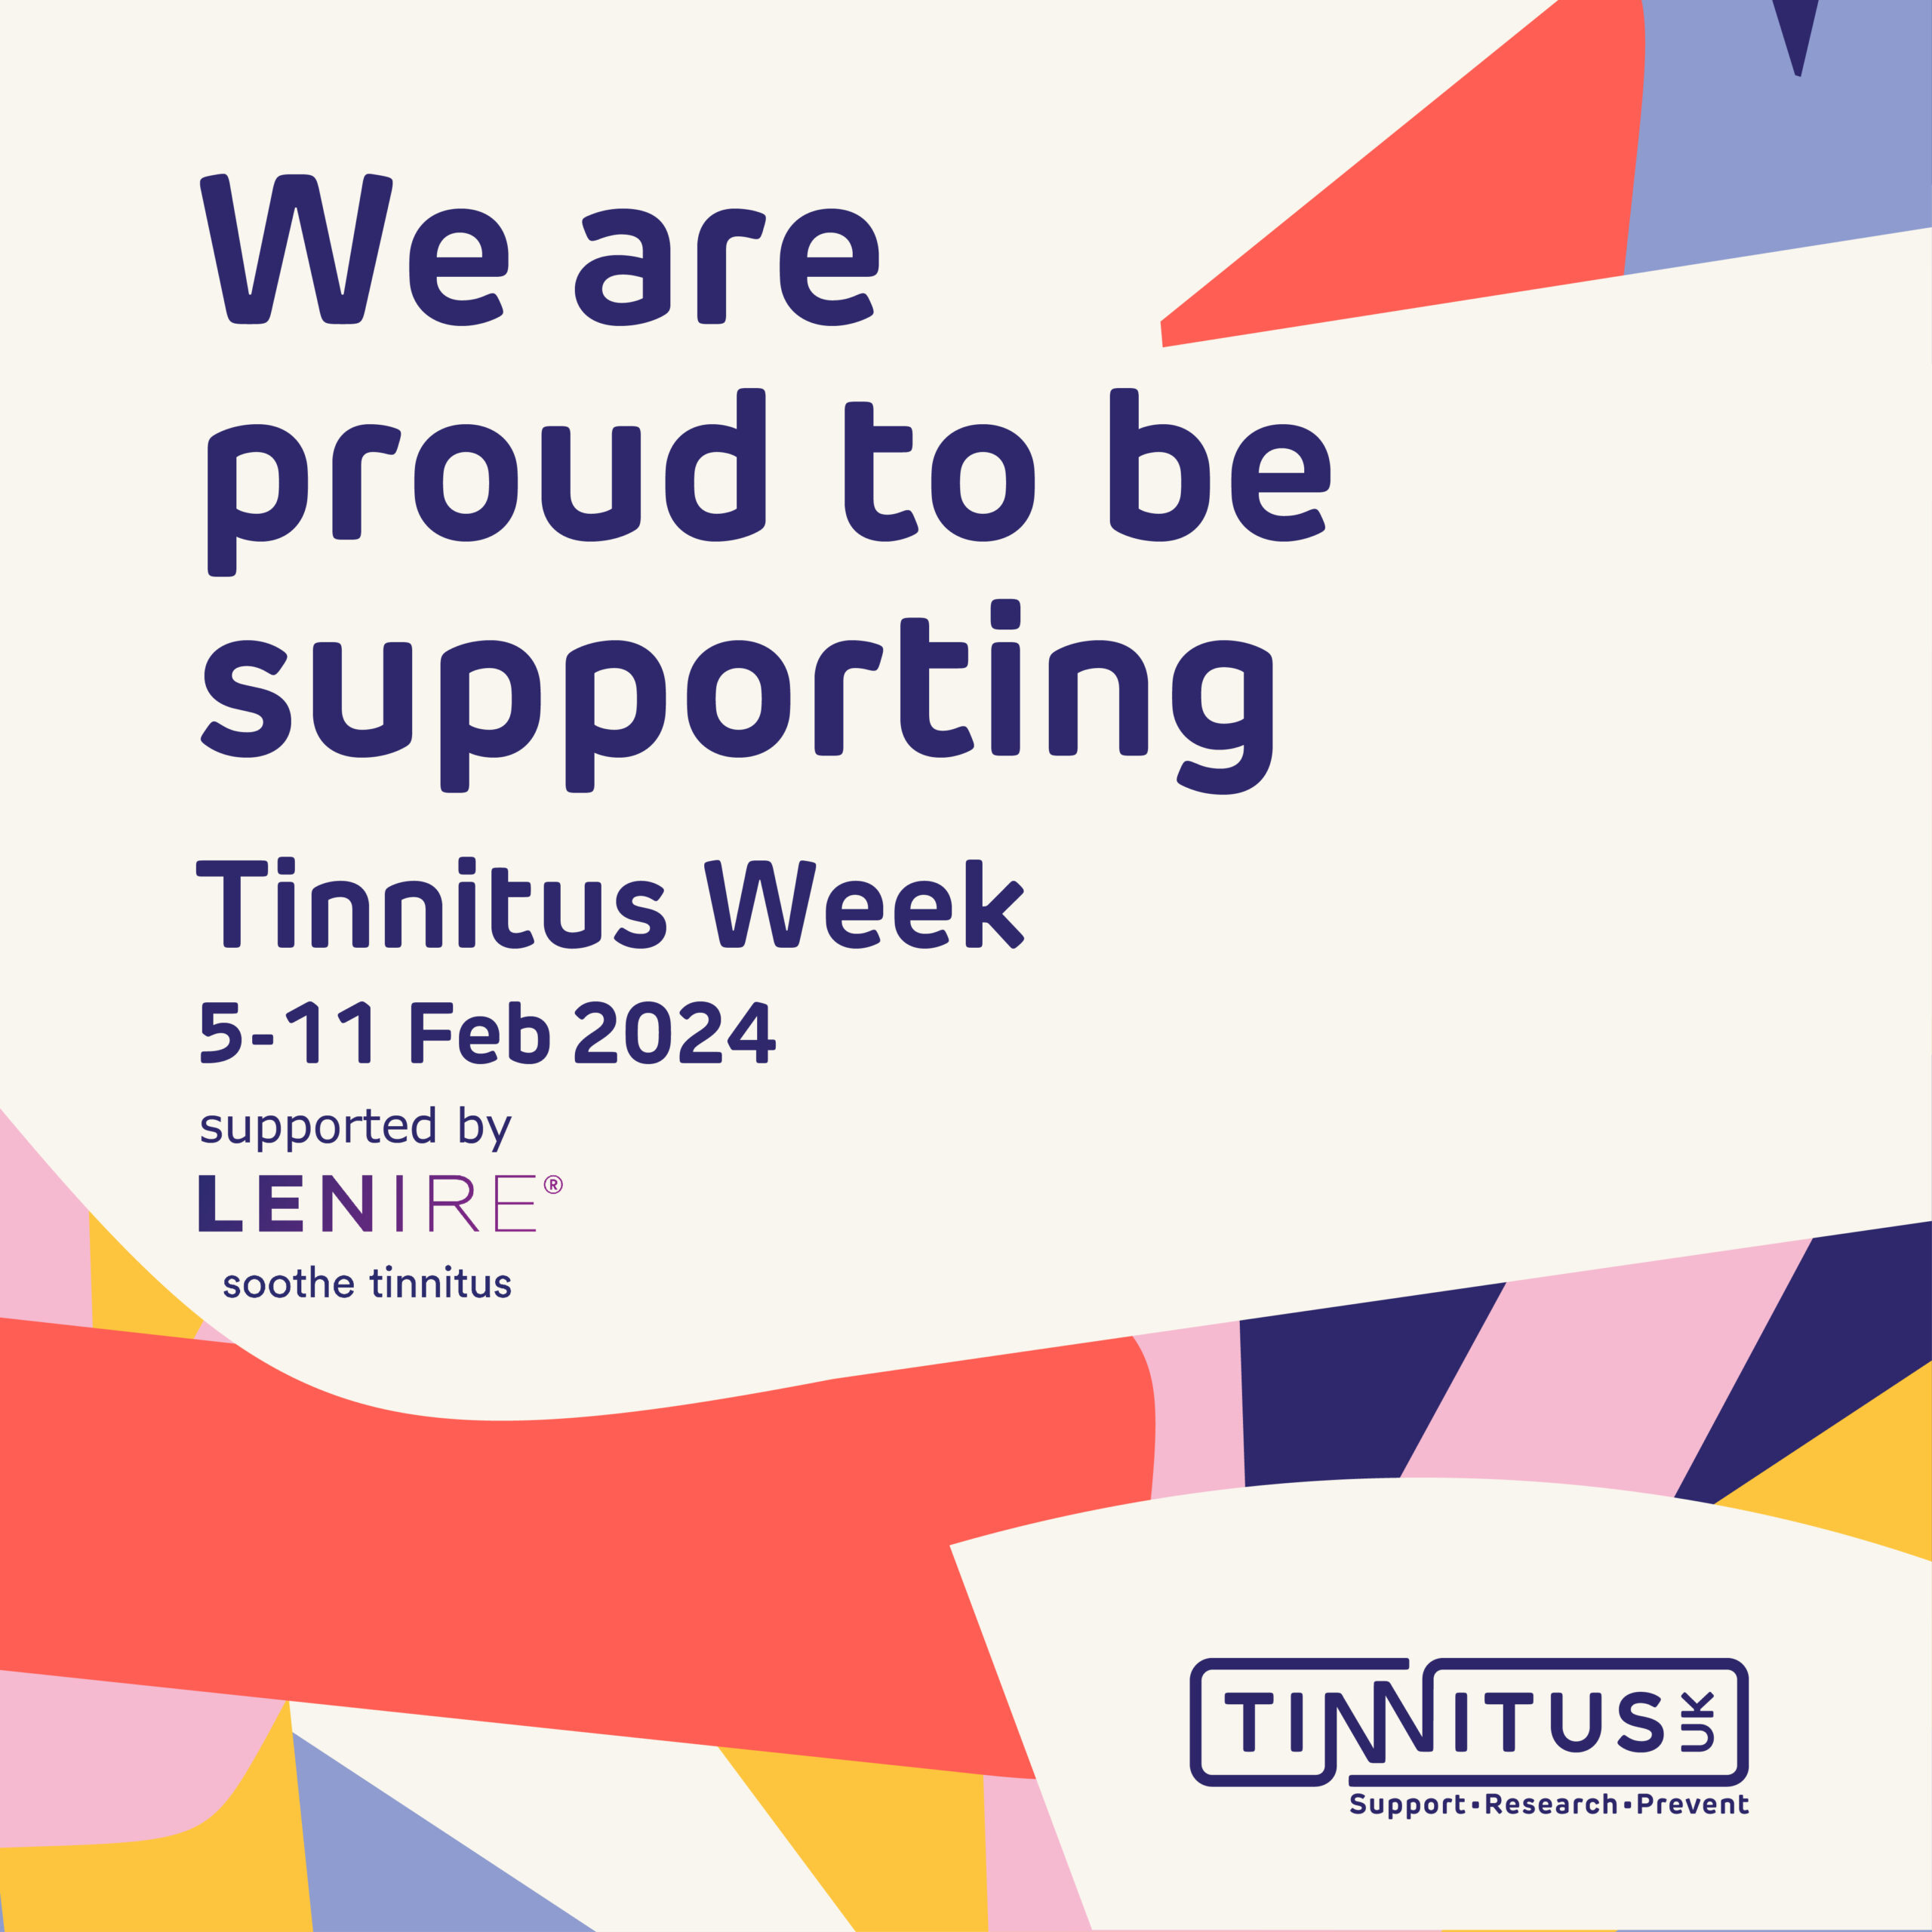 It's Tinnitus Awareness Week!